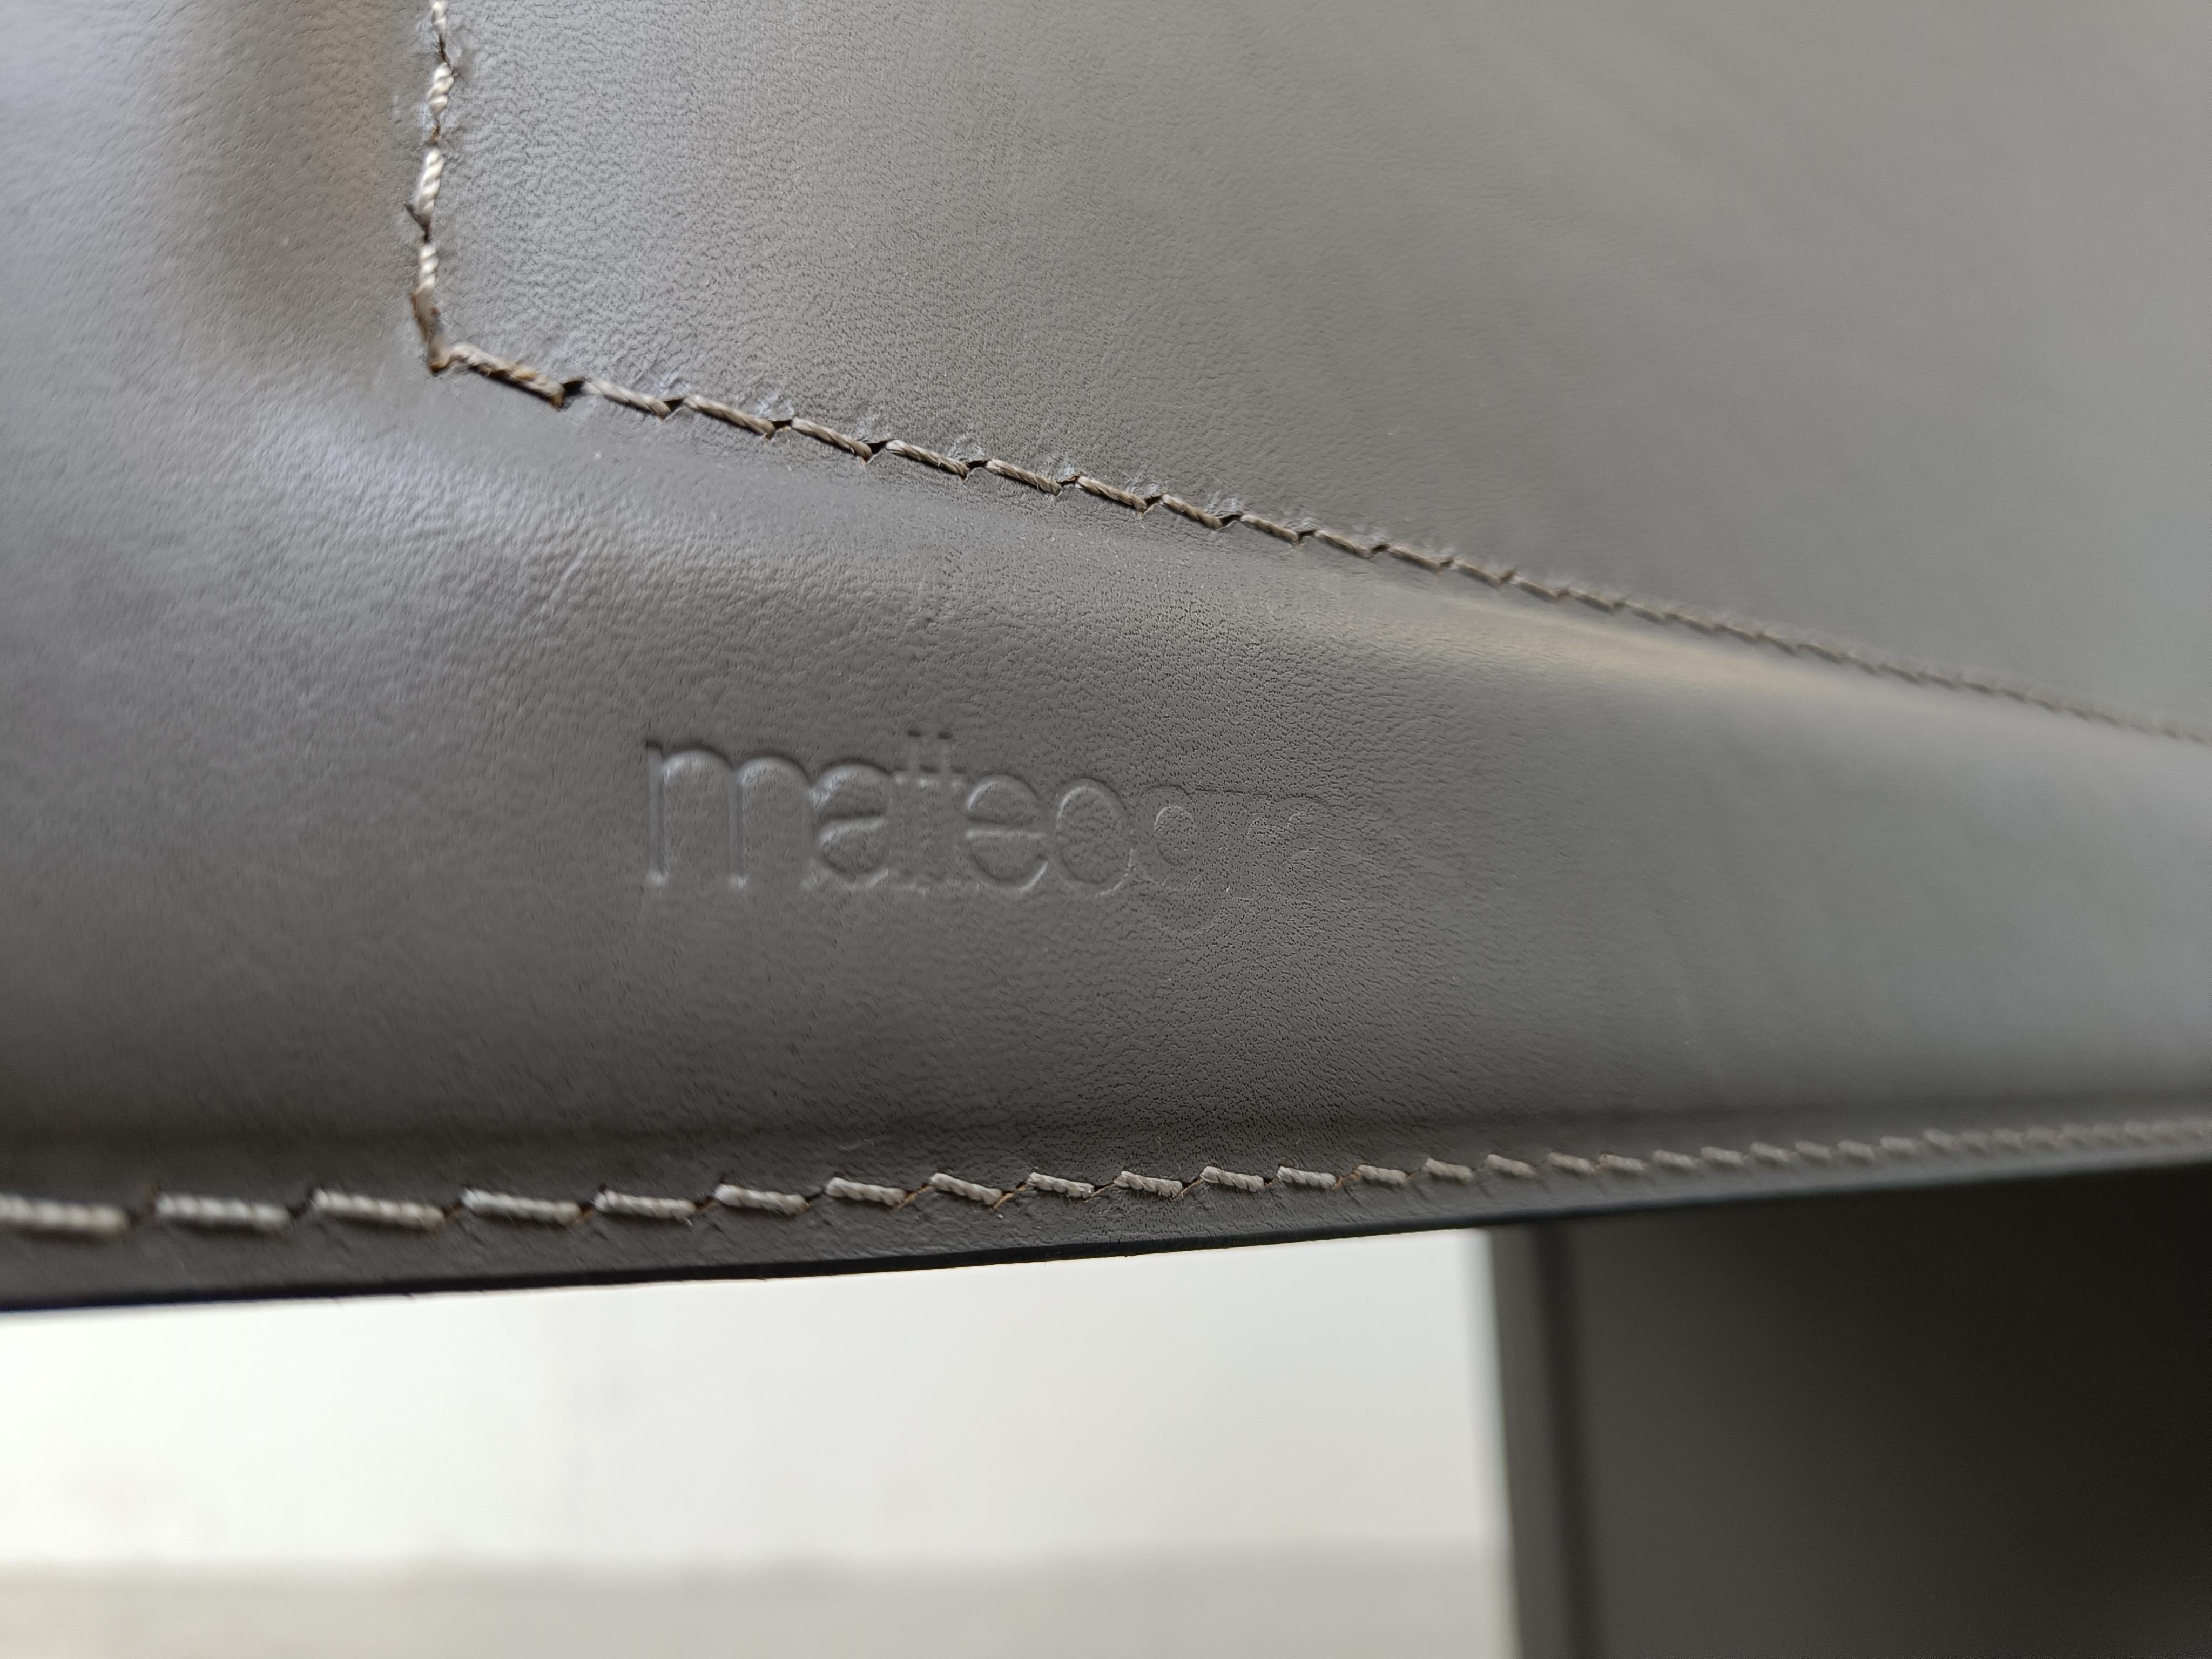 
Set aus 4 grauen Ledersesseln, entworfen von Tito Agnoli und hergestellt für Matteo Grassi

Die Stühle sind in gutem Zustand.

Die Stühle sind alle auf der Rückseite beschriftet.

1980er Jahre - Italien

Abmessungen
Höhe: 85cm/33.46